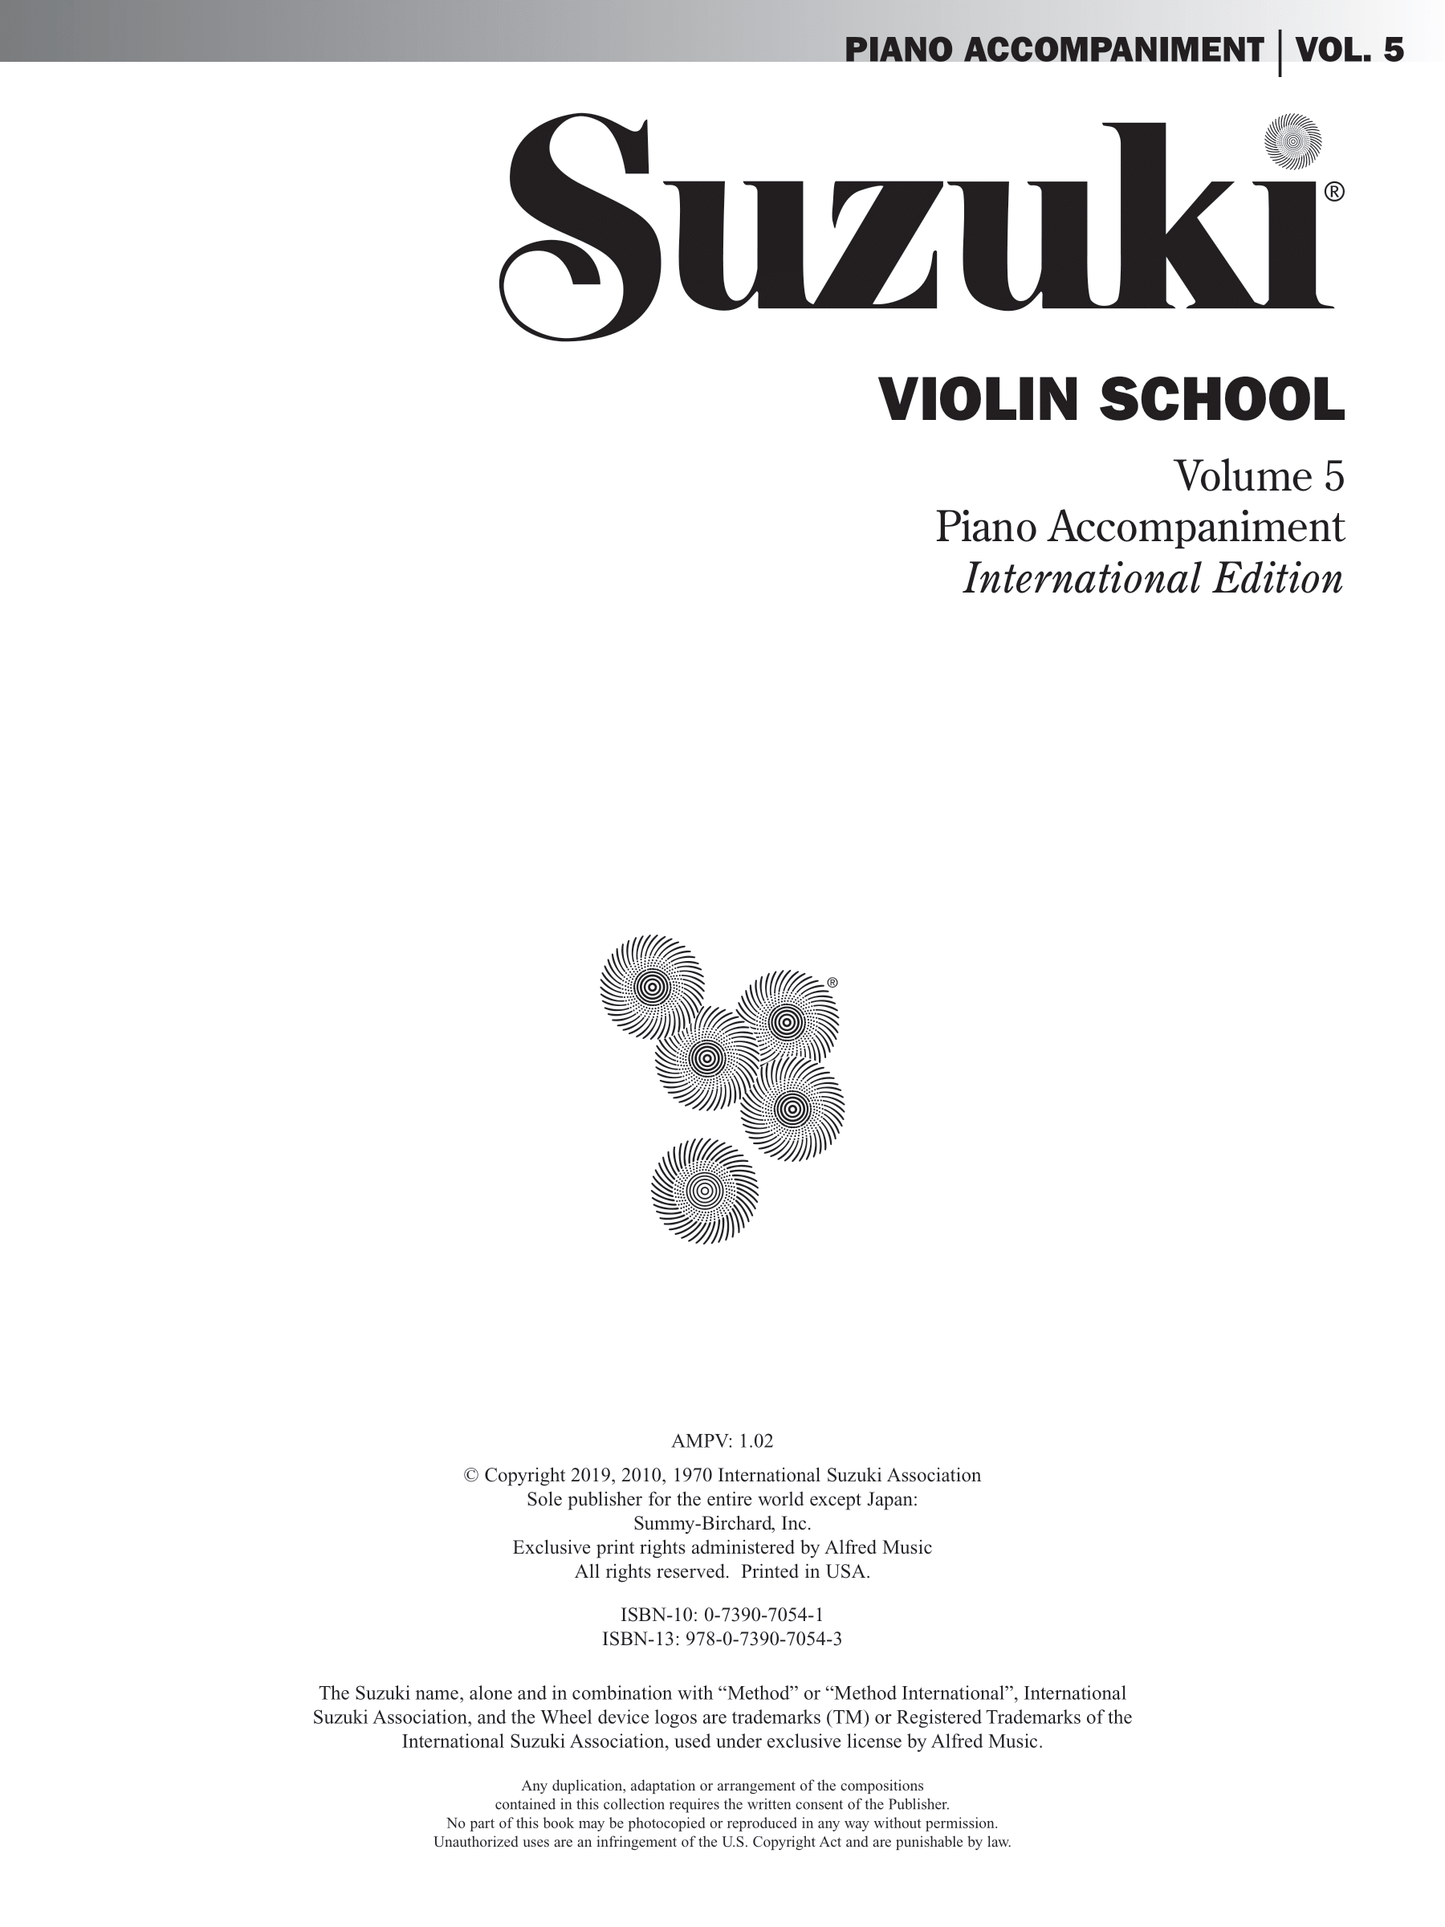 Suzuki Violin School - Volume 5 Piano Accompaniment Book